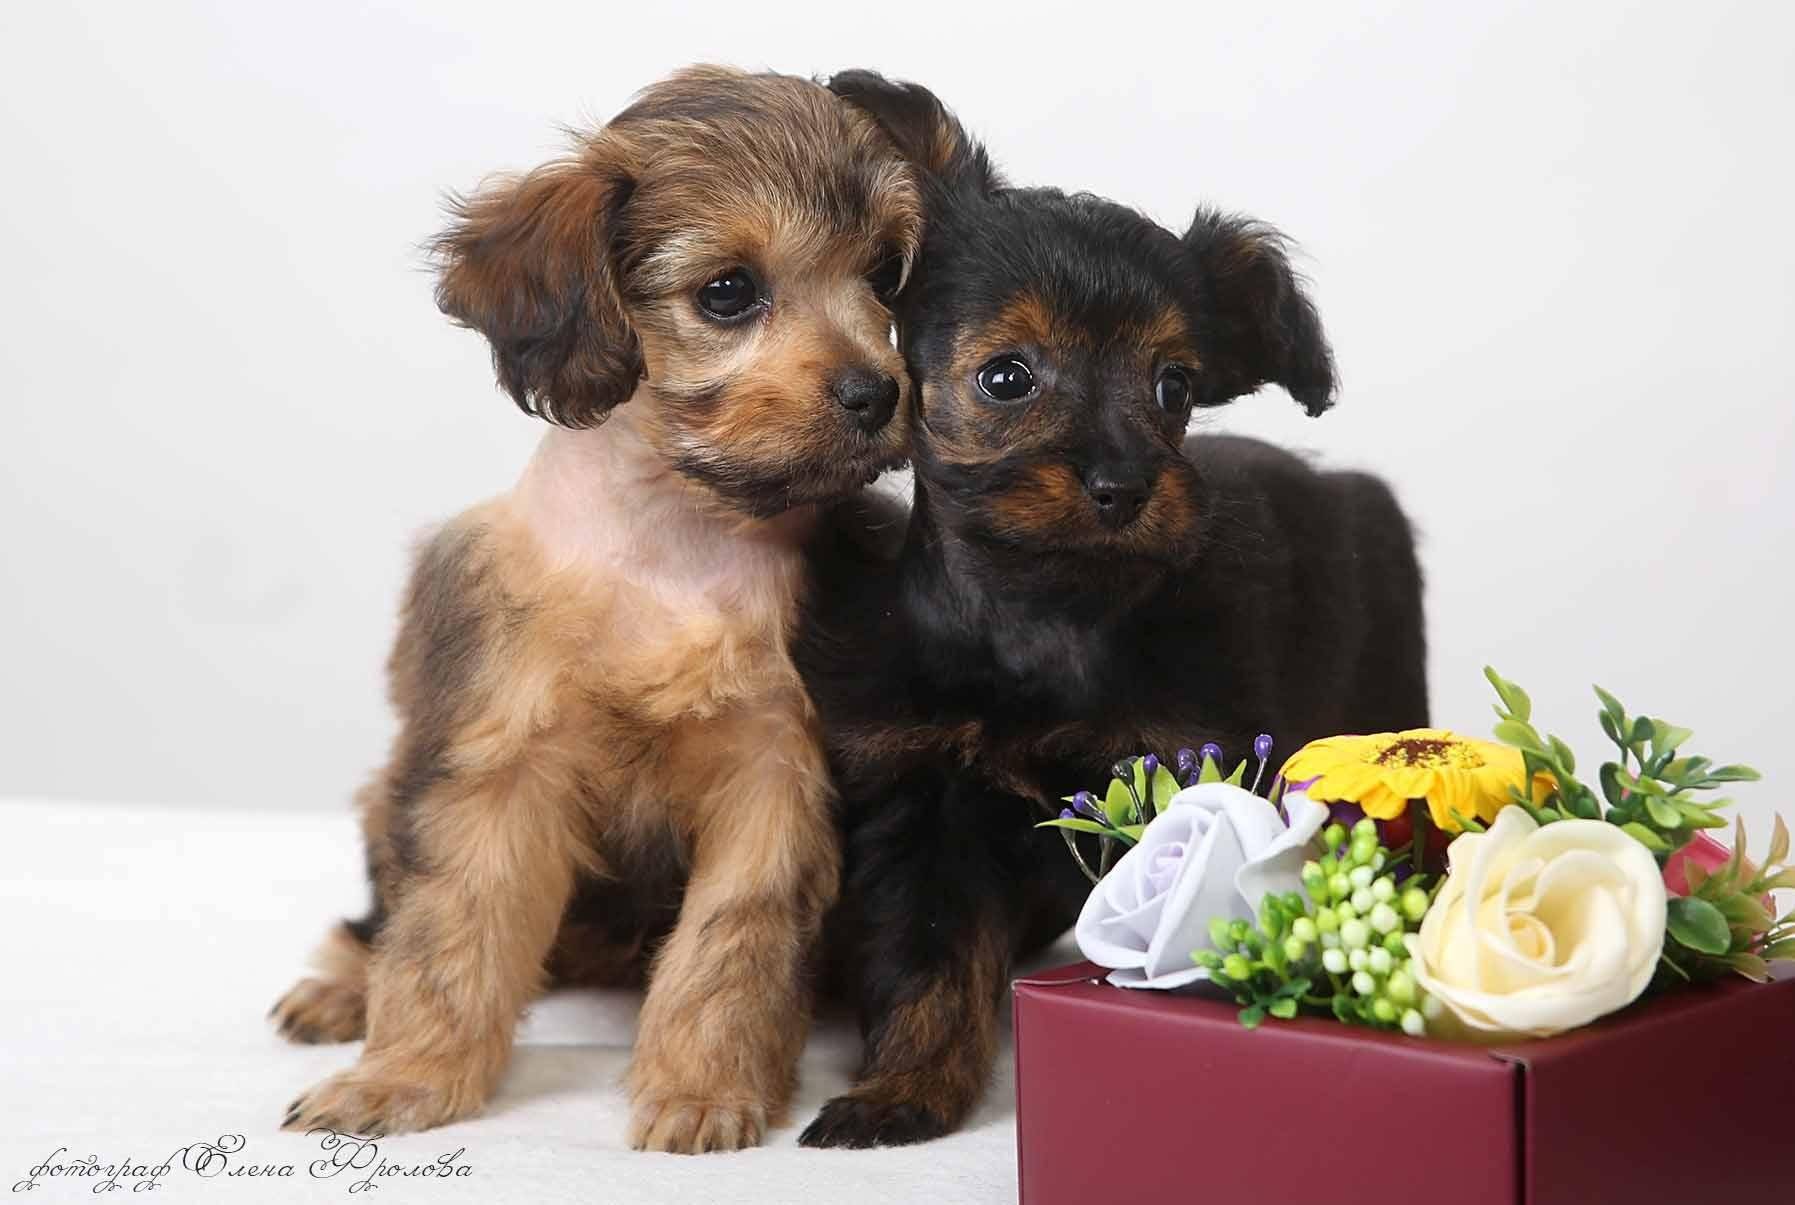 Петербургская орхидея: фото собаки и описание породы